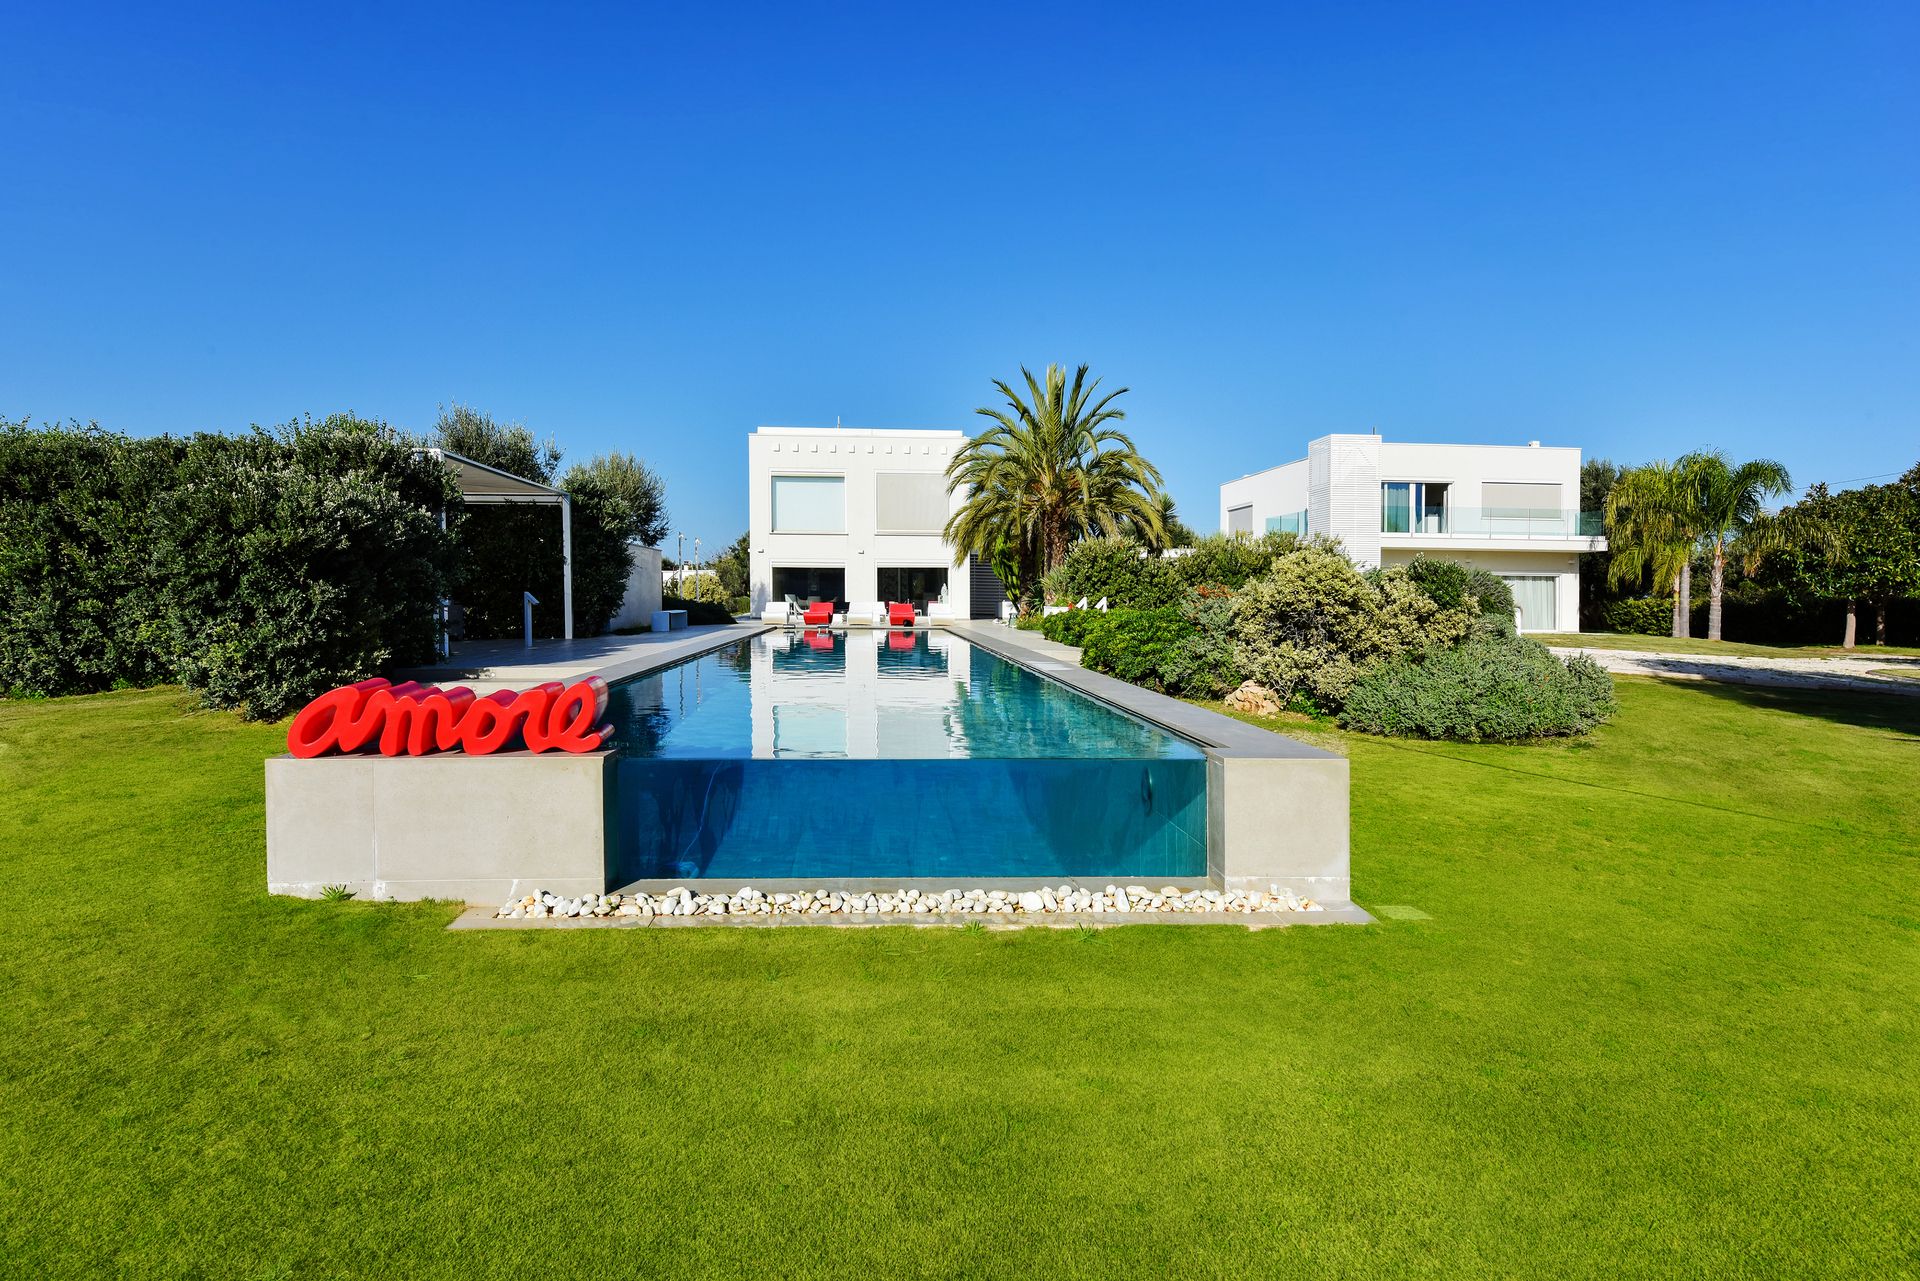 For sale villa by the sea Monopoli Puglia